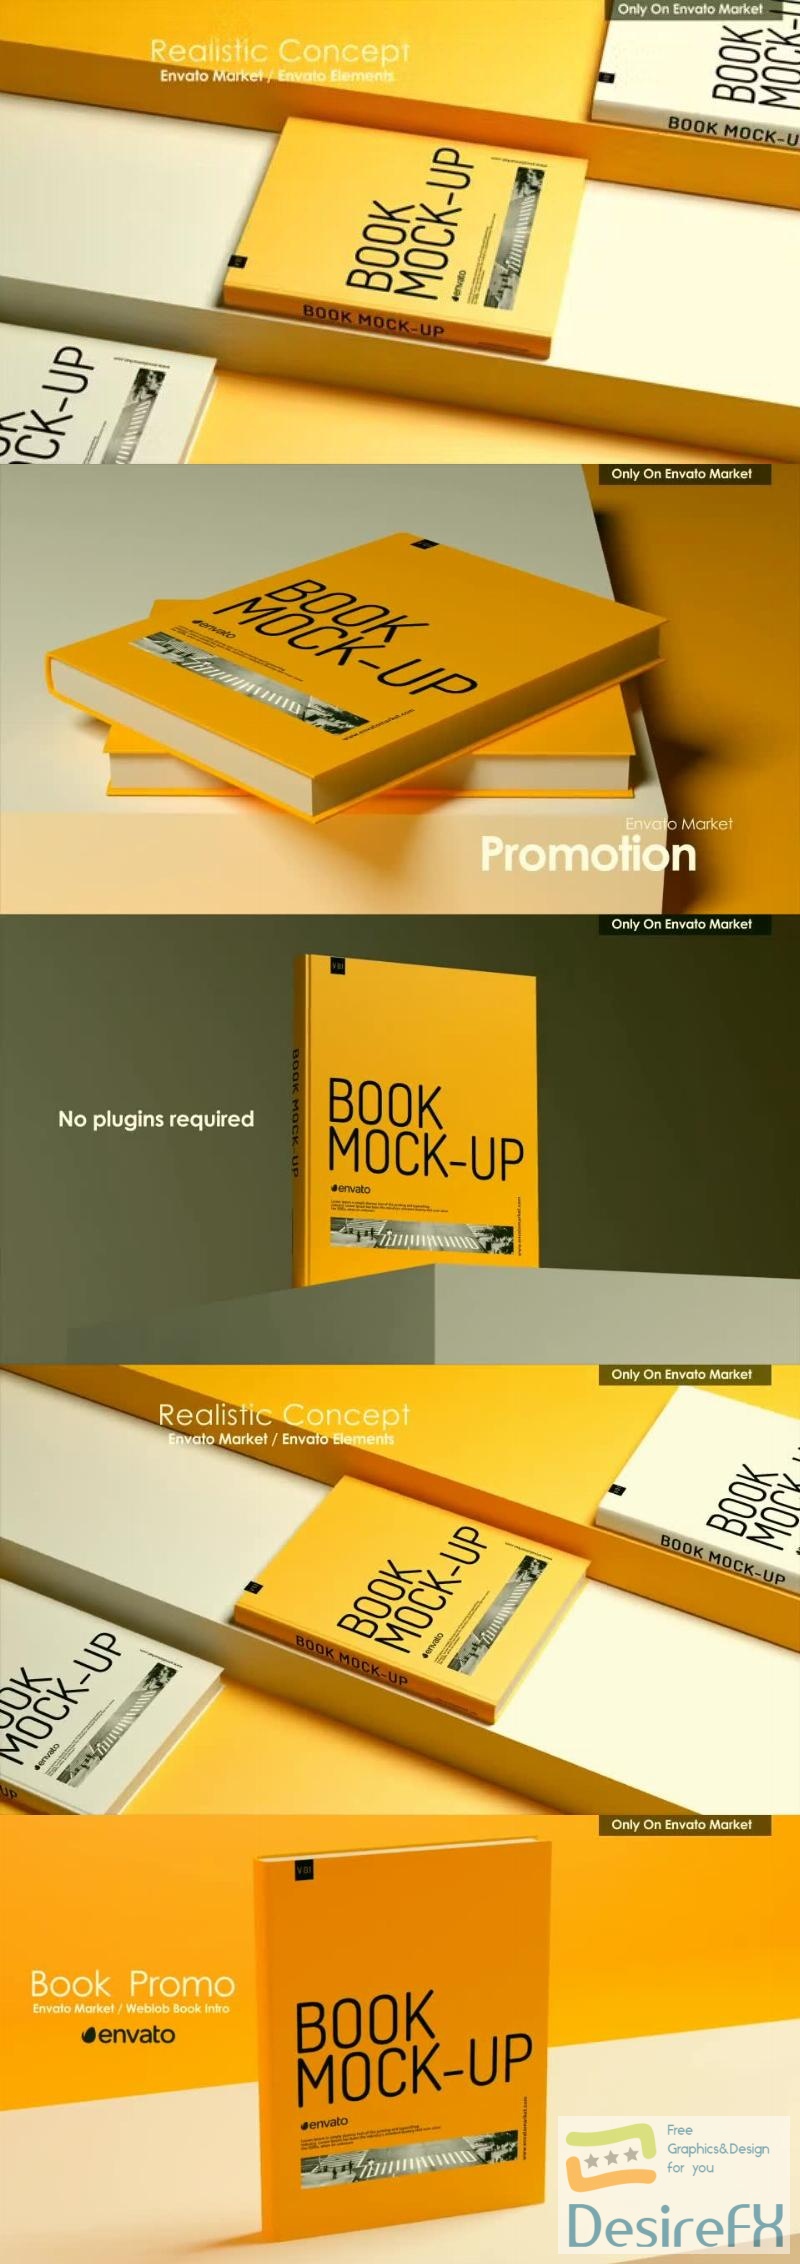 Videohive Book Promo 45362513